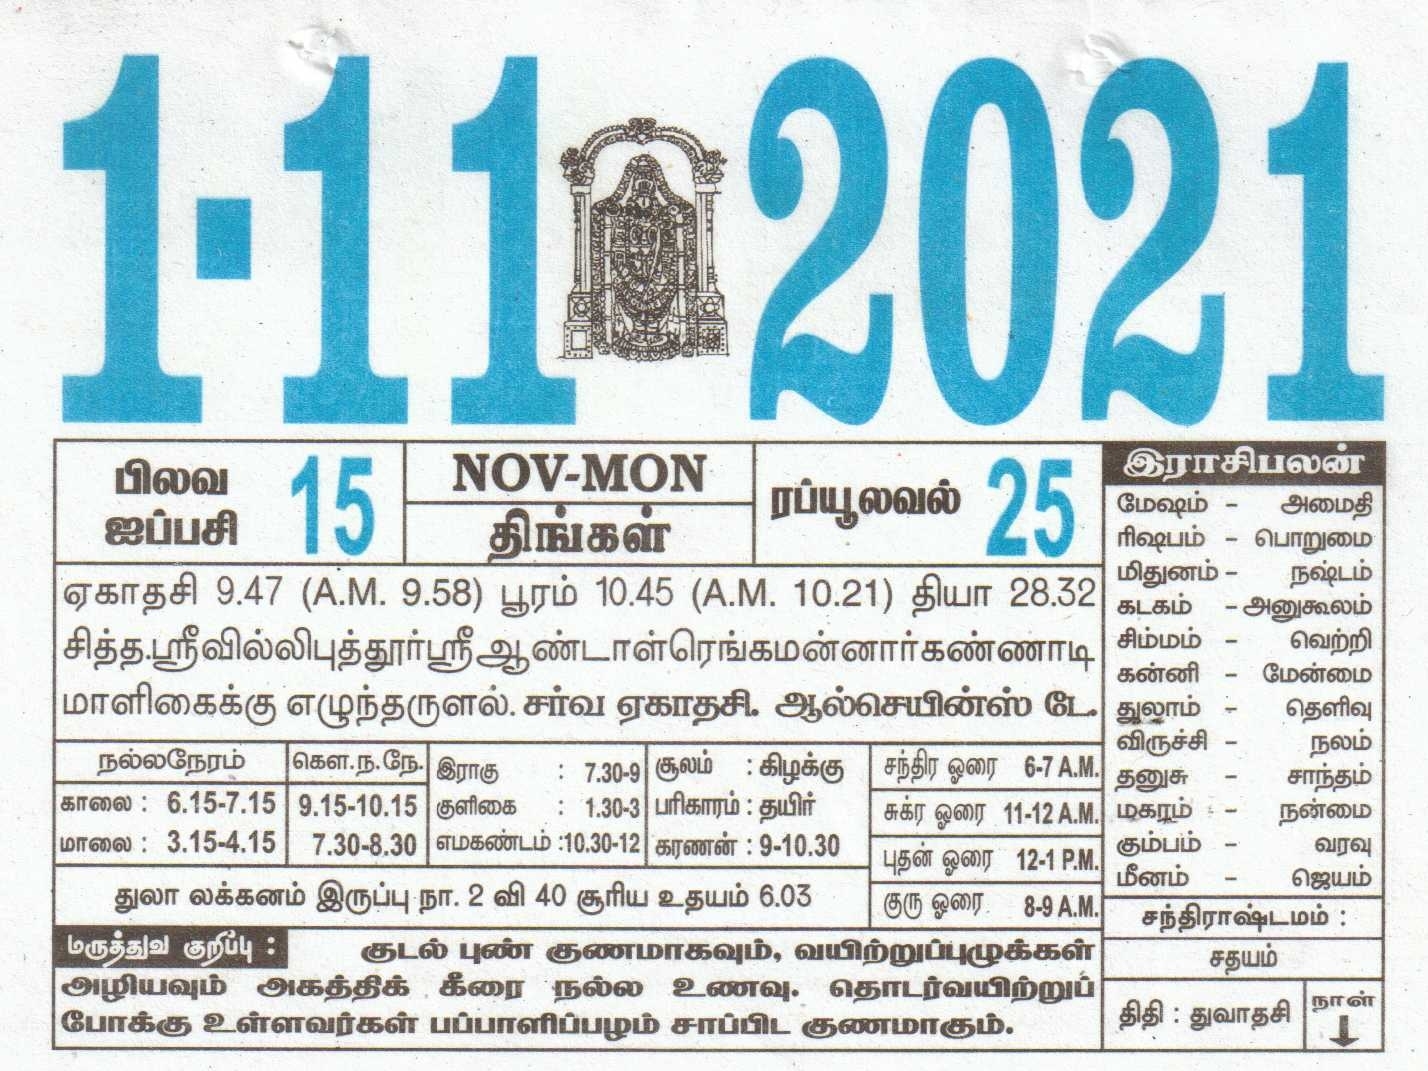 01-11-2021 Daily Calendar | Date 01 , January Daily Tear Off Calendar | Daily Panchangam Rasi Palan November Month Tamil Calendar 2021